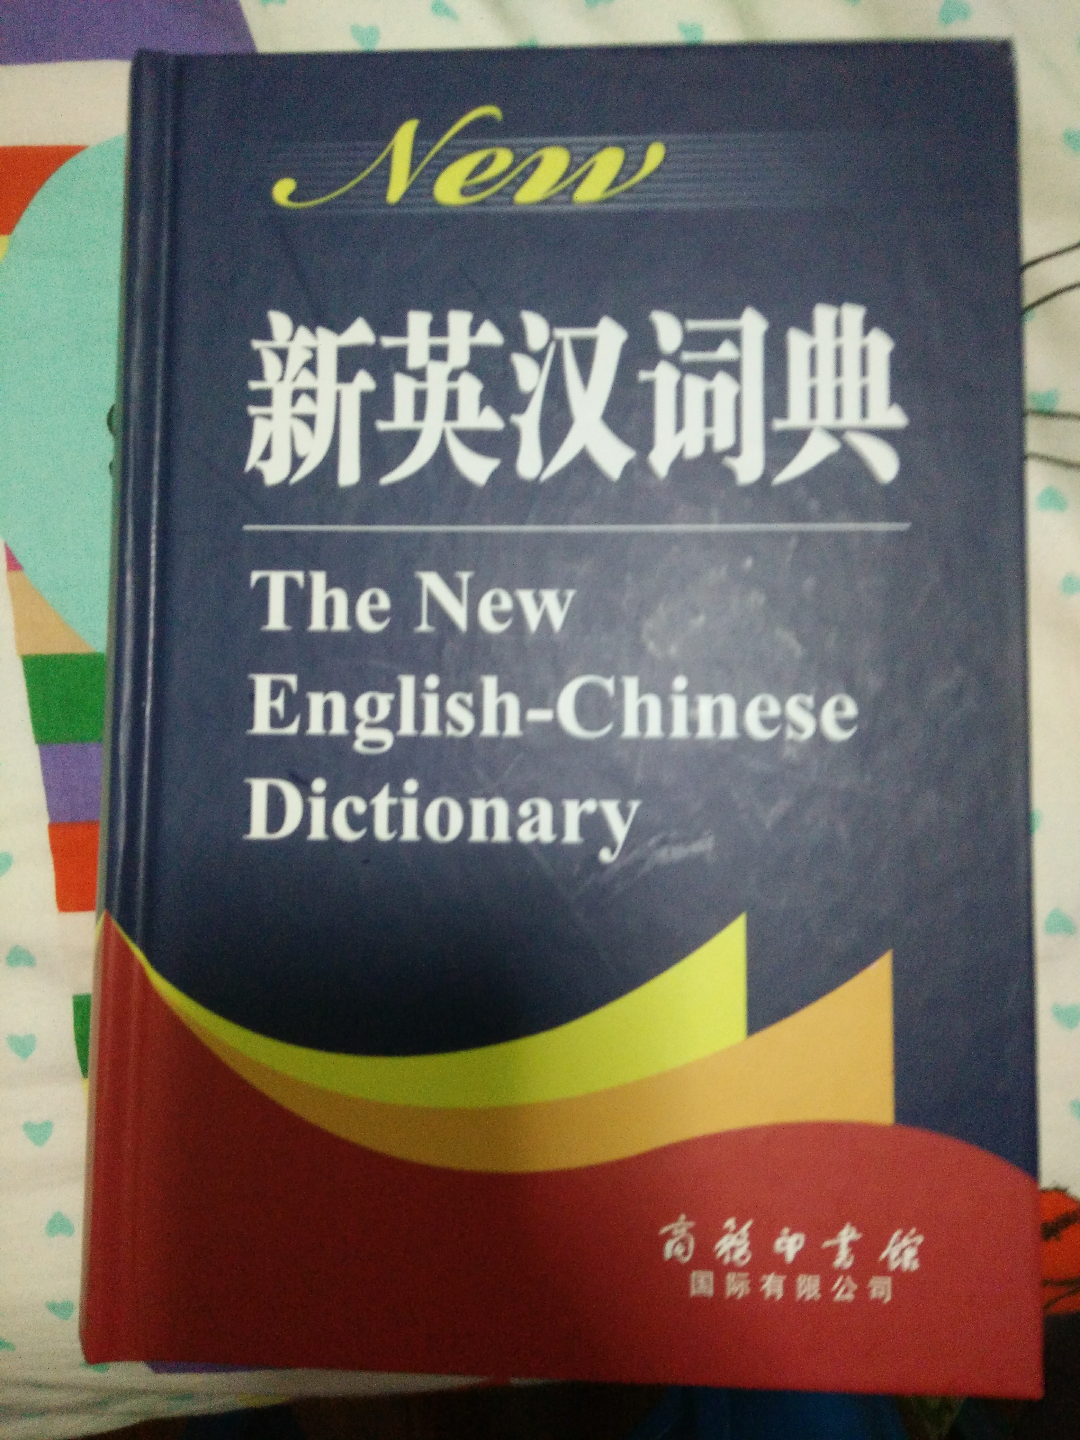 怎样查新英汉词典?